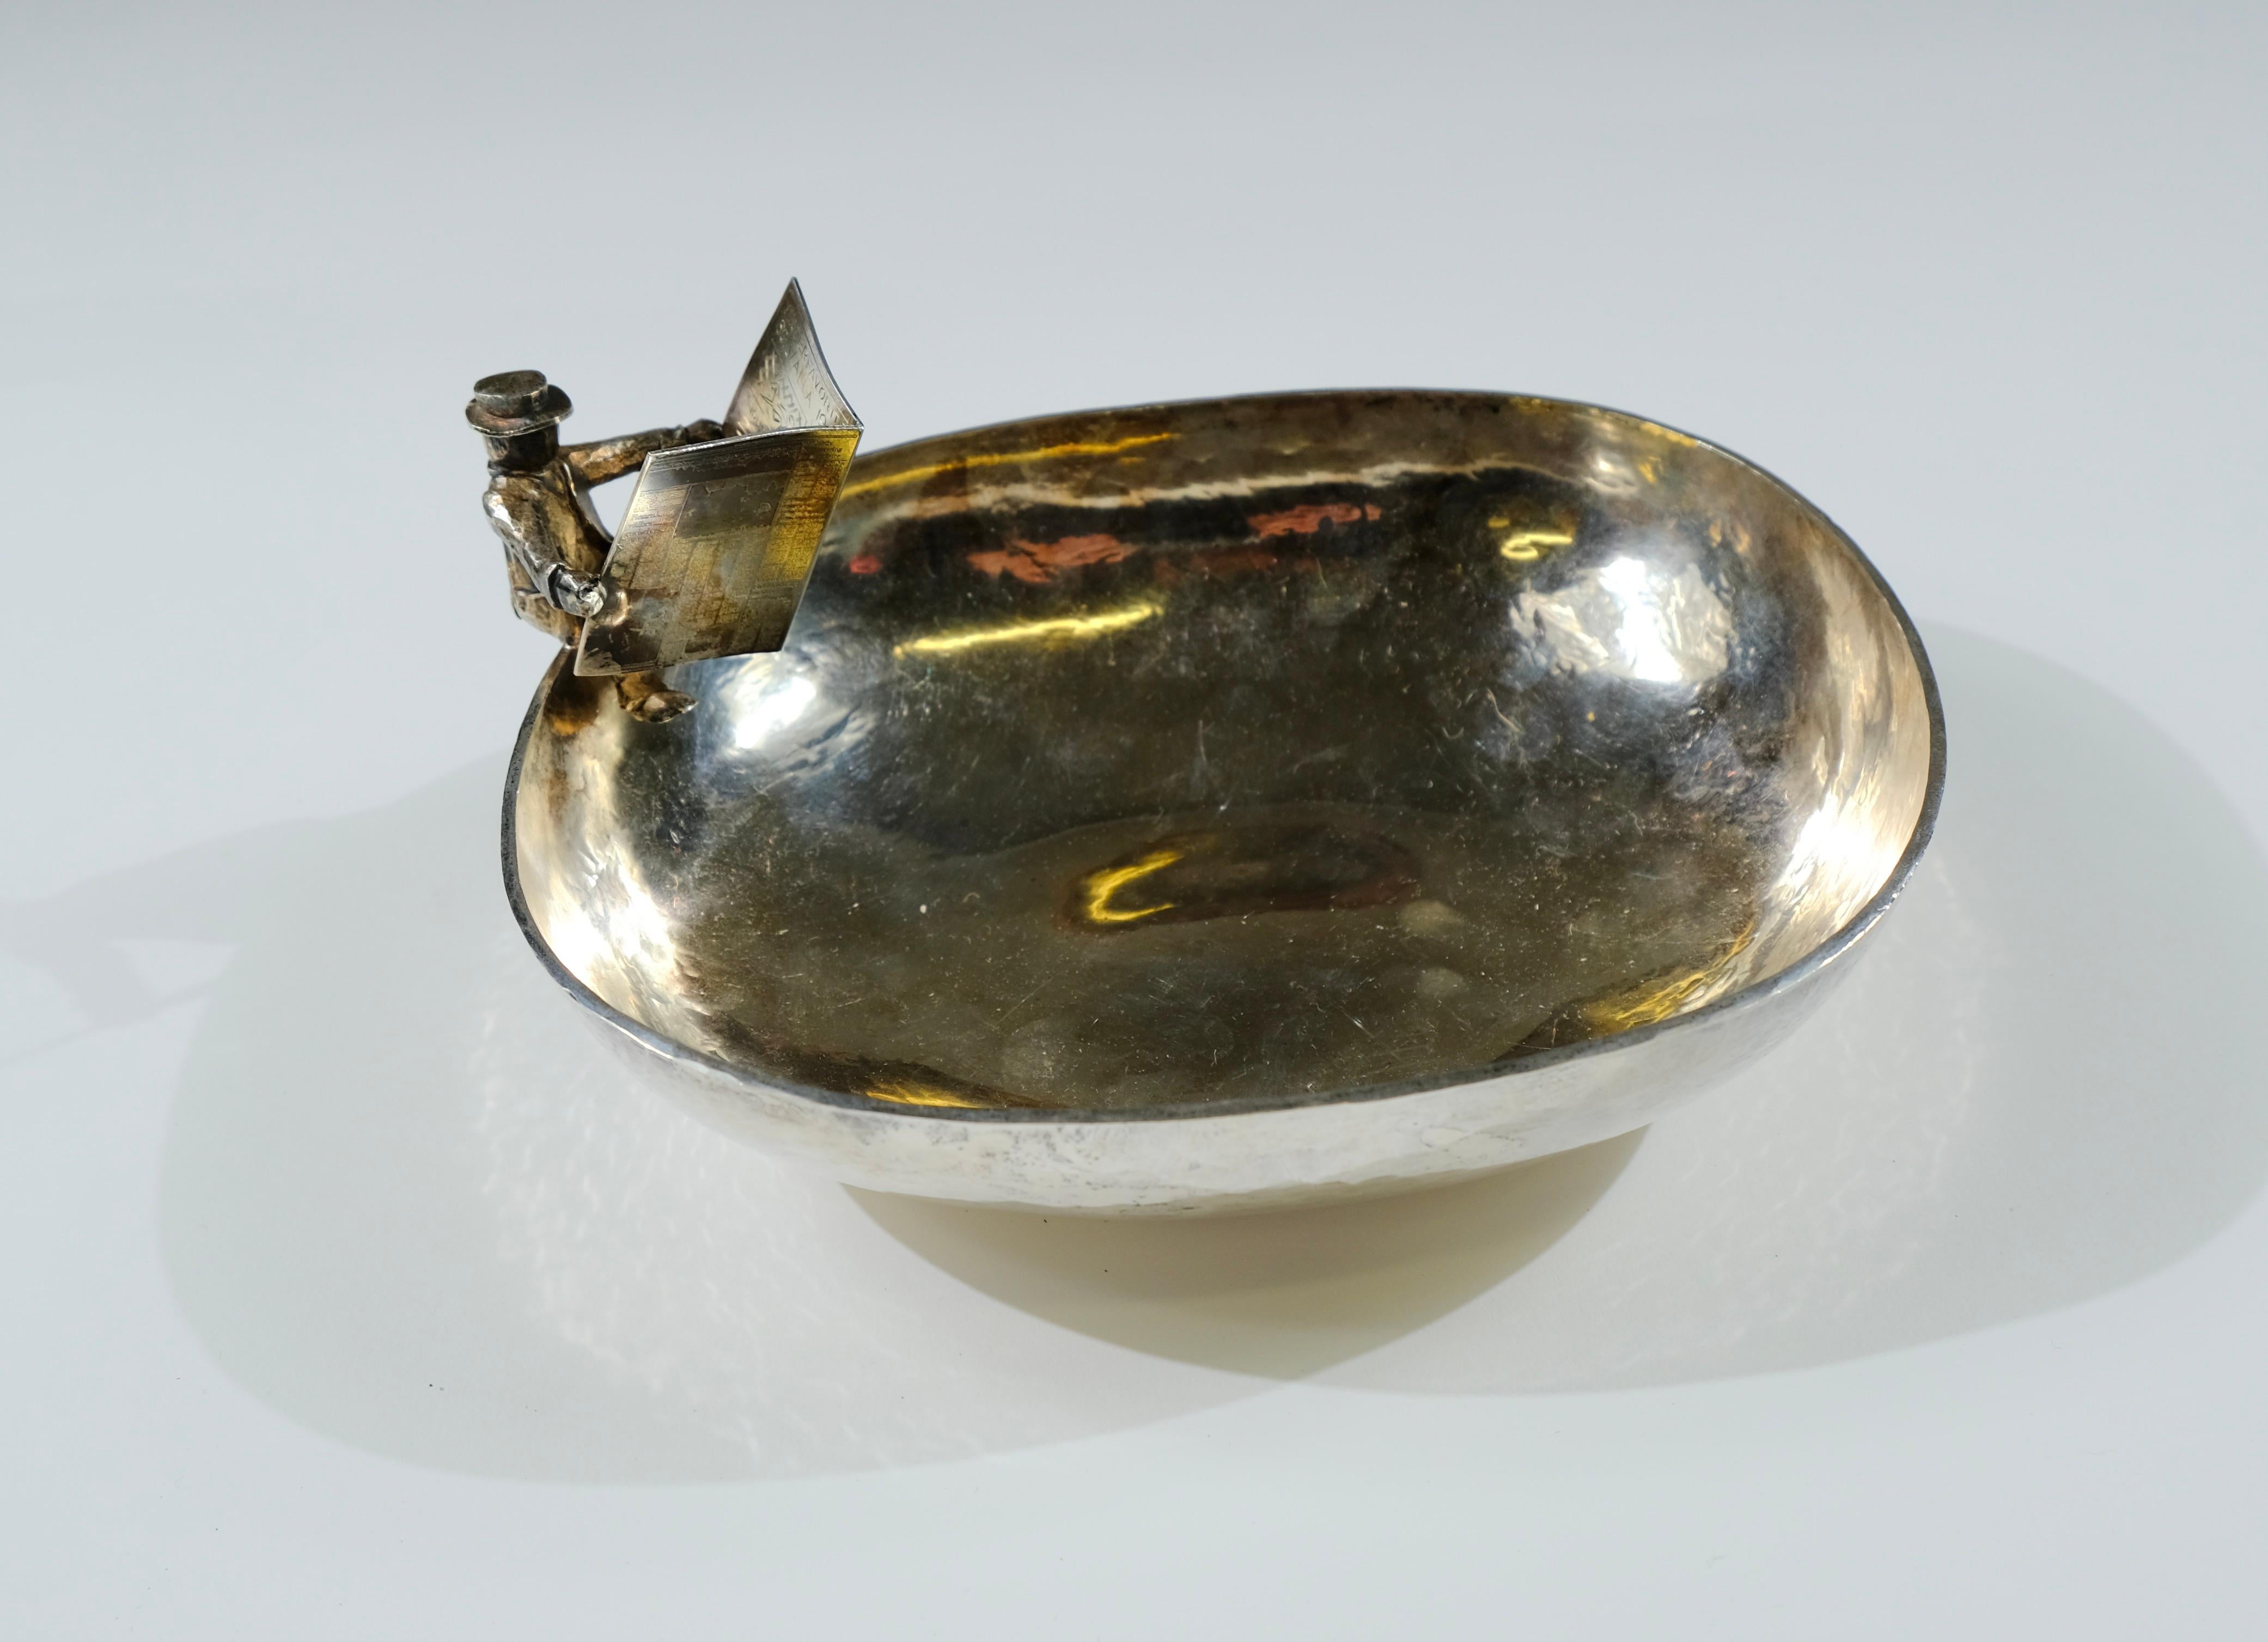 Un bol en argent réalisé en 1982 par l'orfèvre suédois Jan Lundgren. Le bol a été fabriqué comme prix pour les courses de chevaux et porte une inscription qui dit 